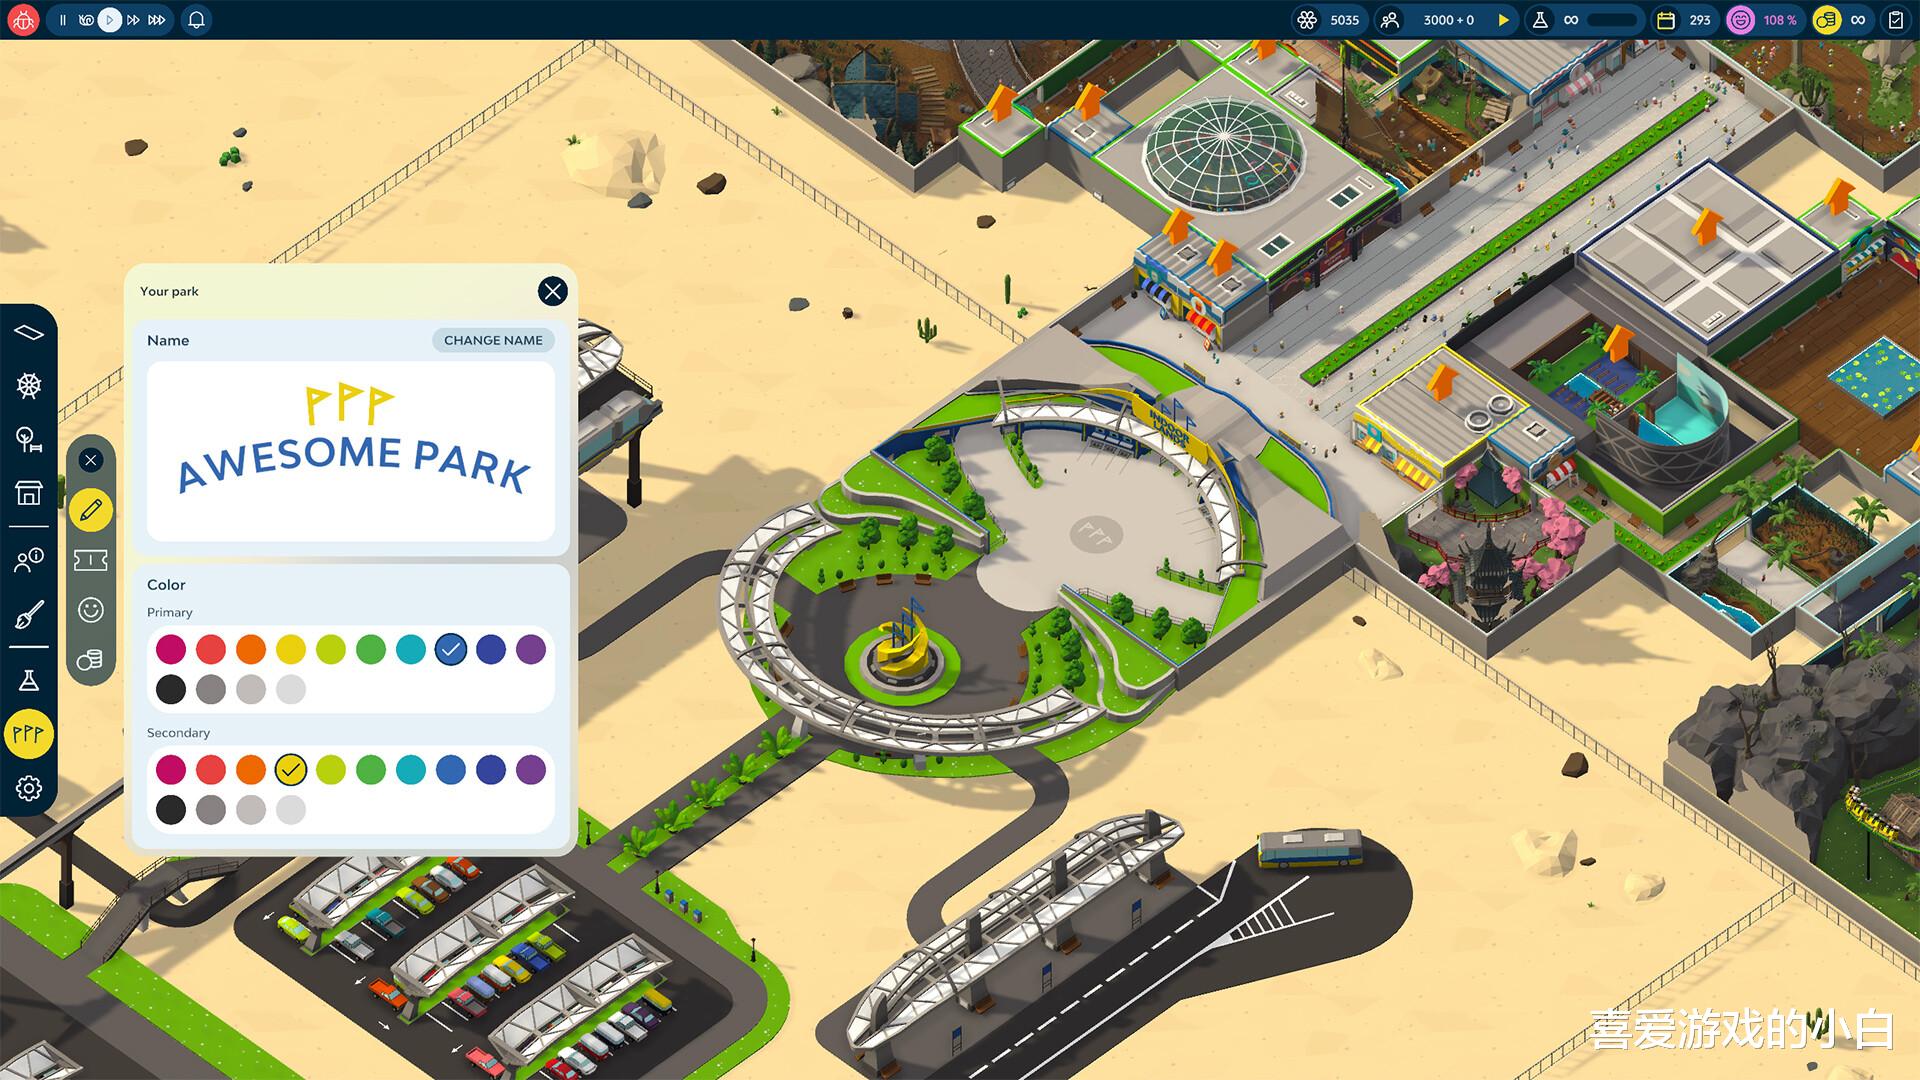 一款主题乐园题材的模拟经营游戏